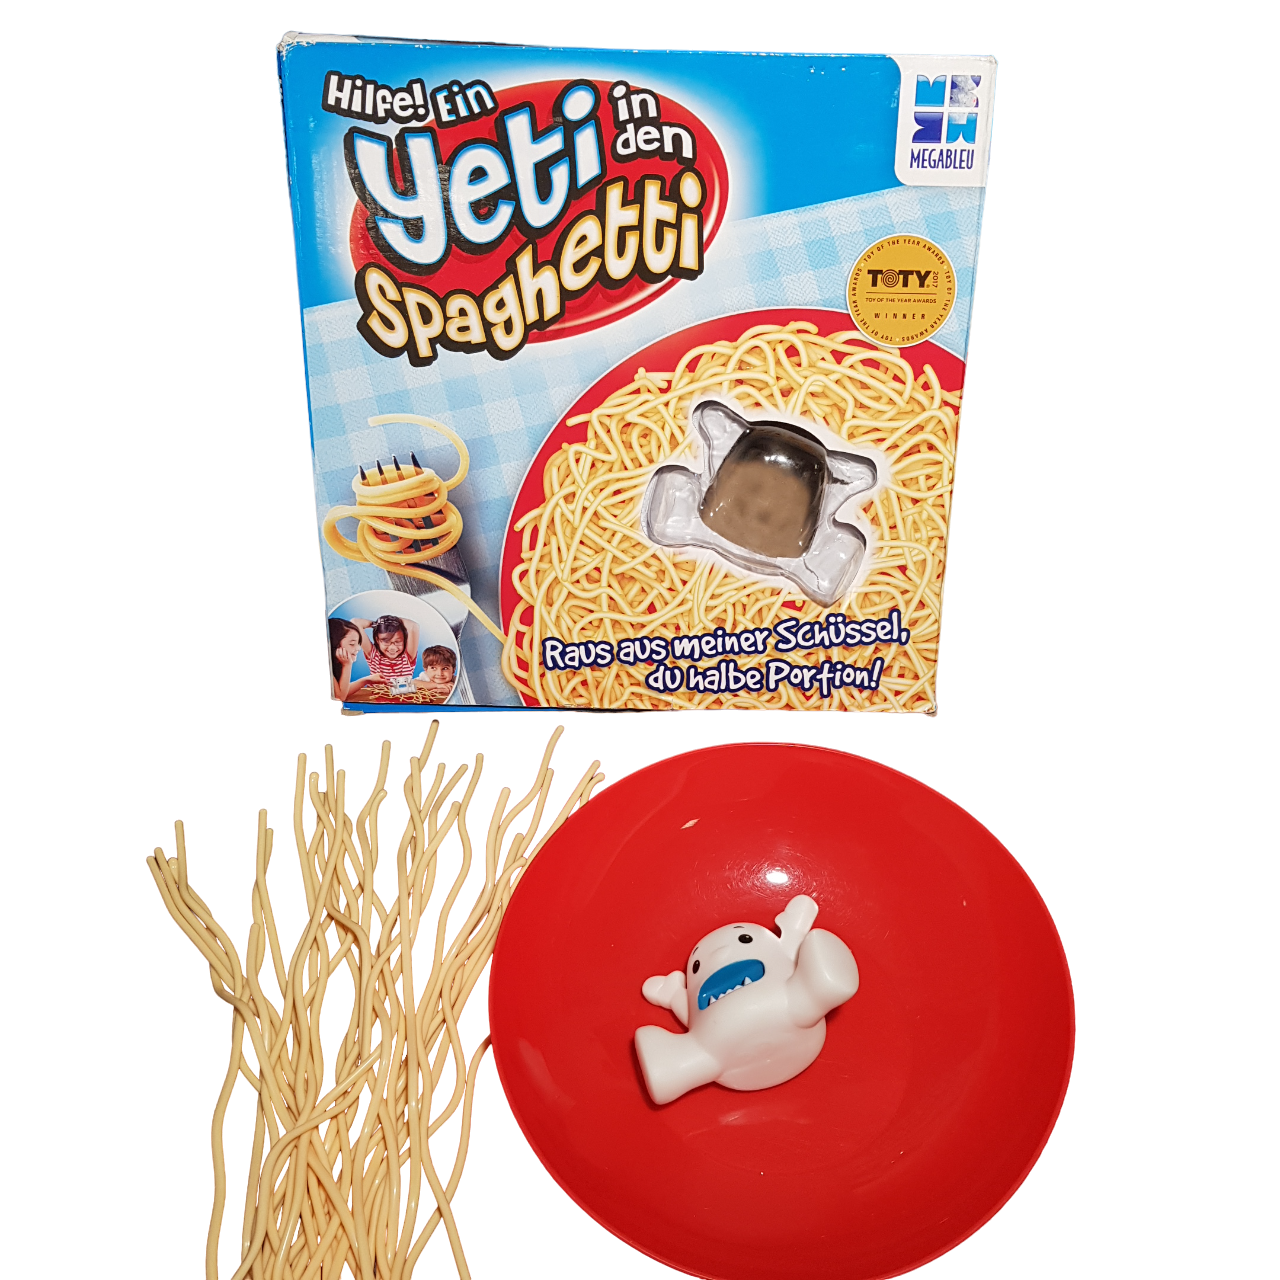 Hilfe! Ein Yeti in den Spaghetti - Spiel - gebraucht